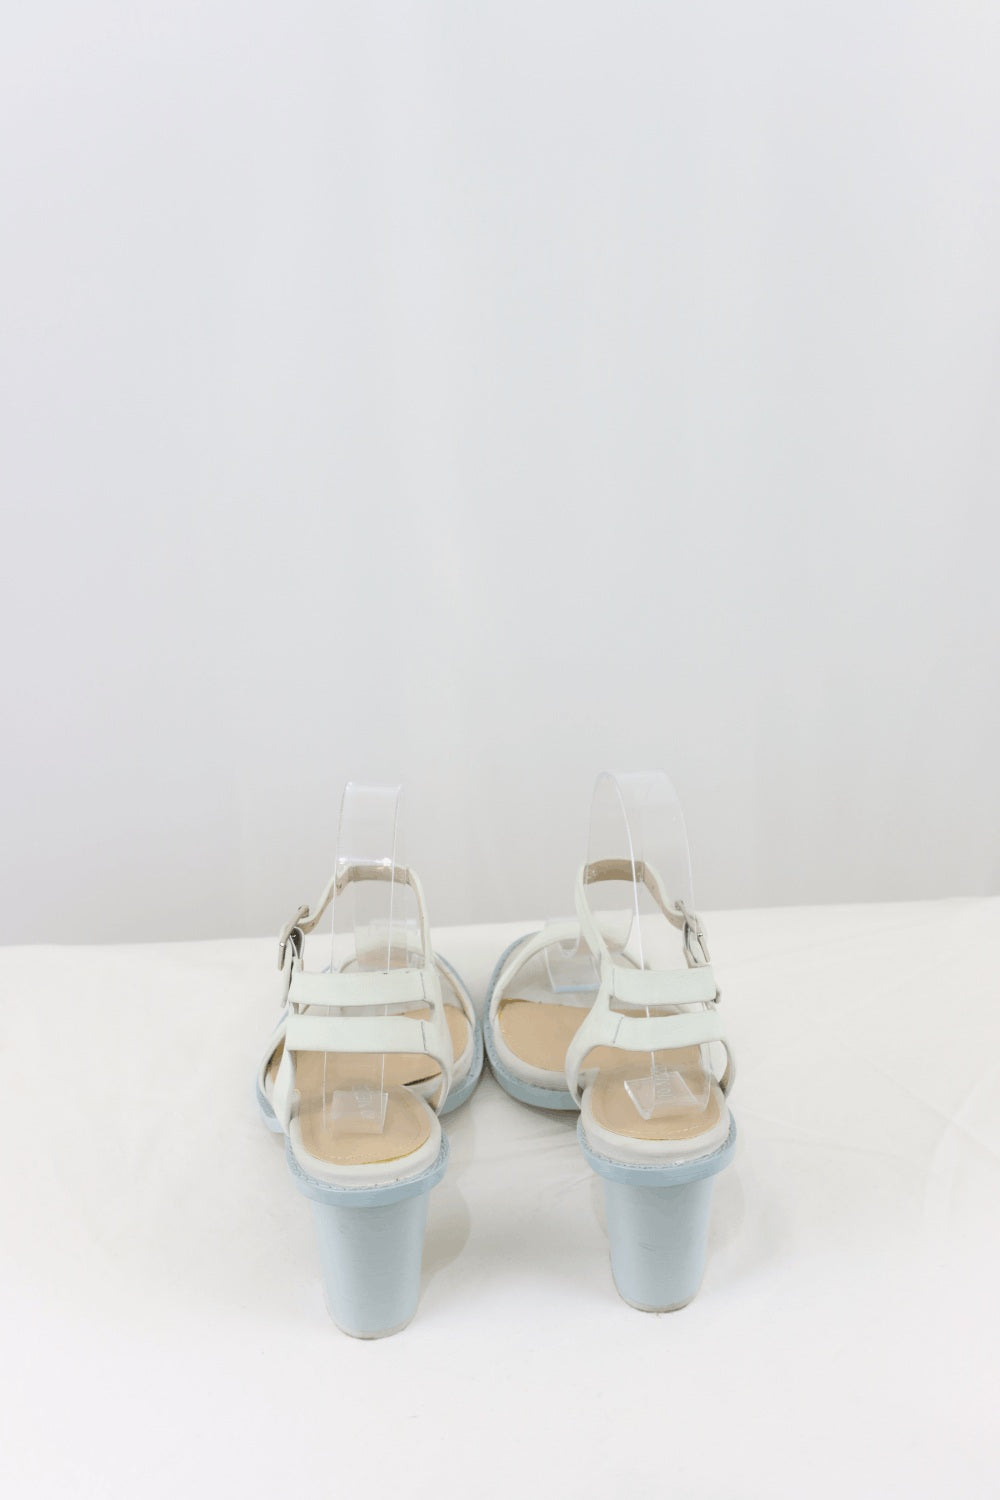 Jo Mercer Cream Sandals (36EU)